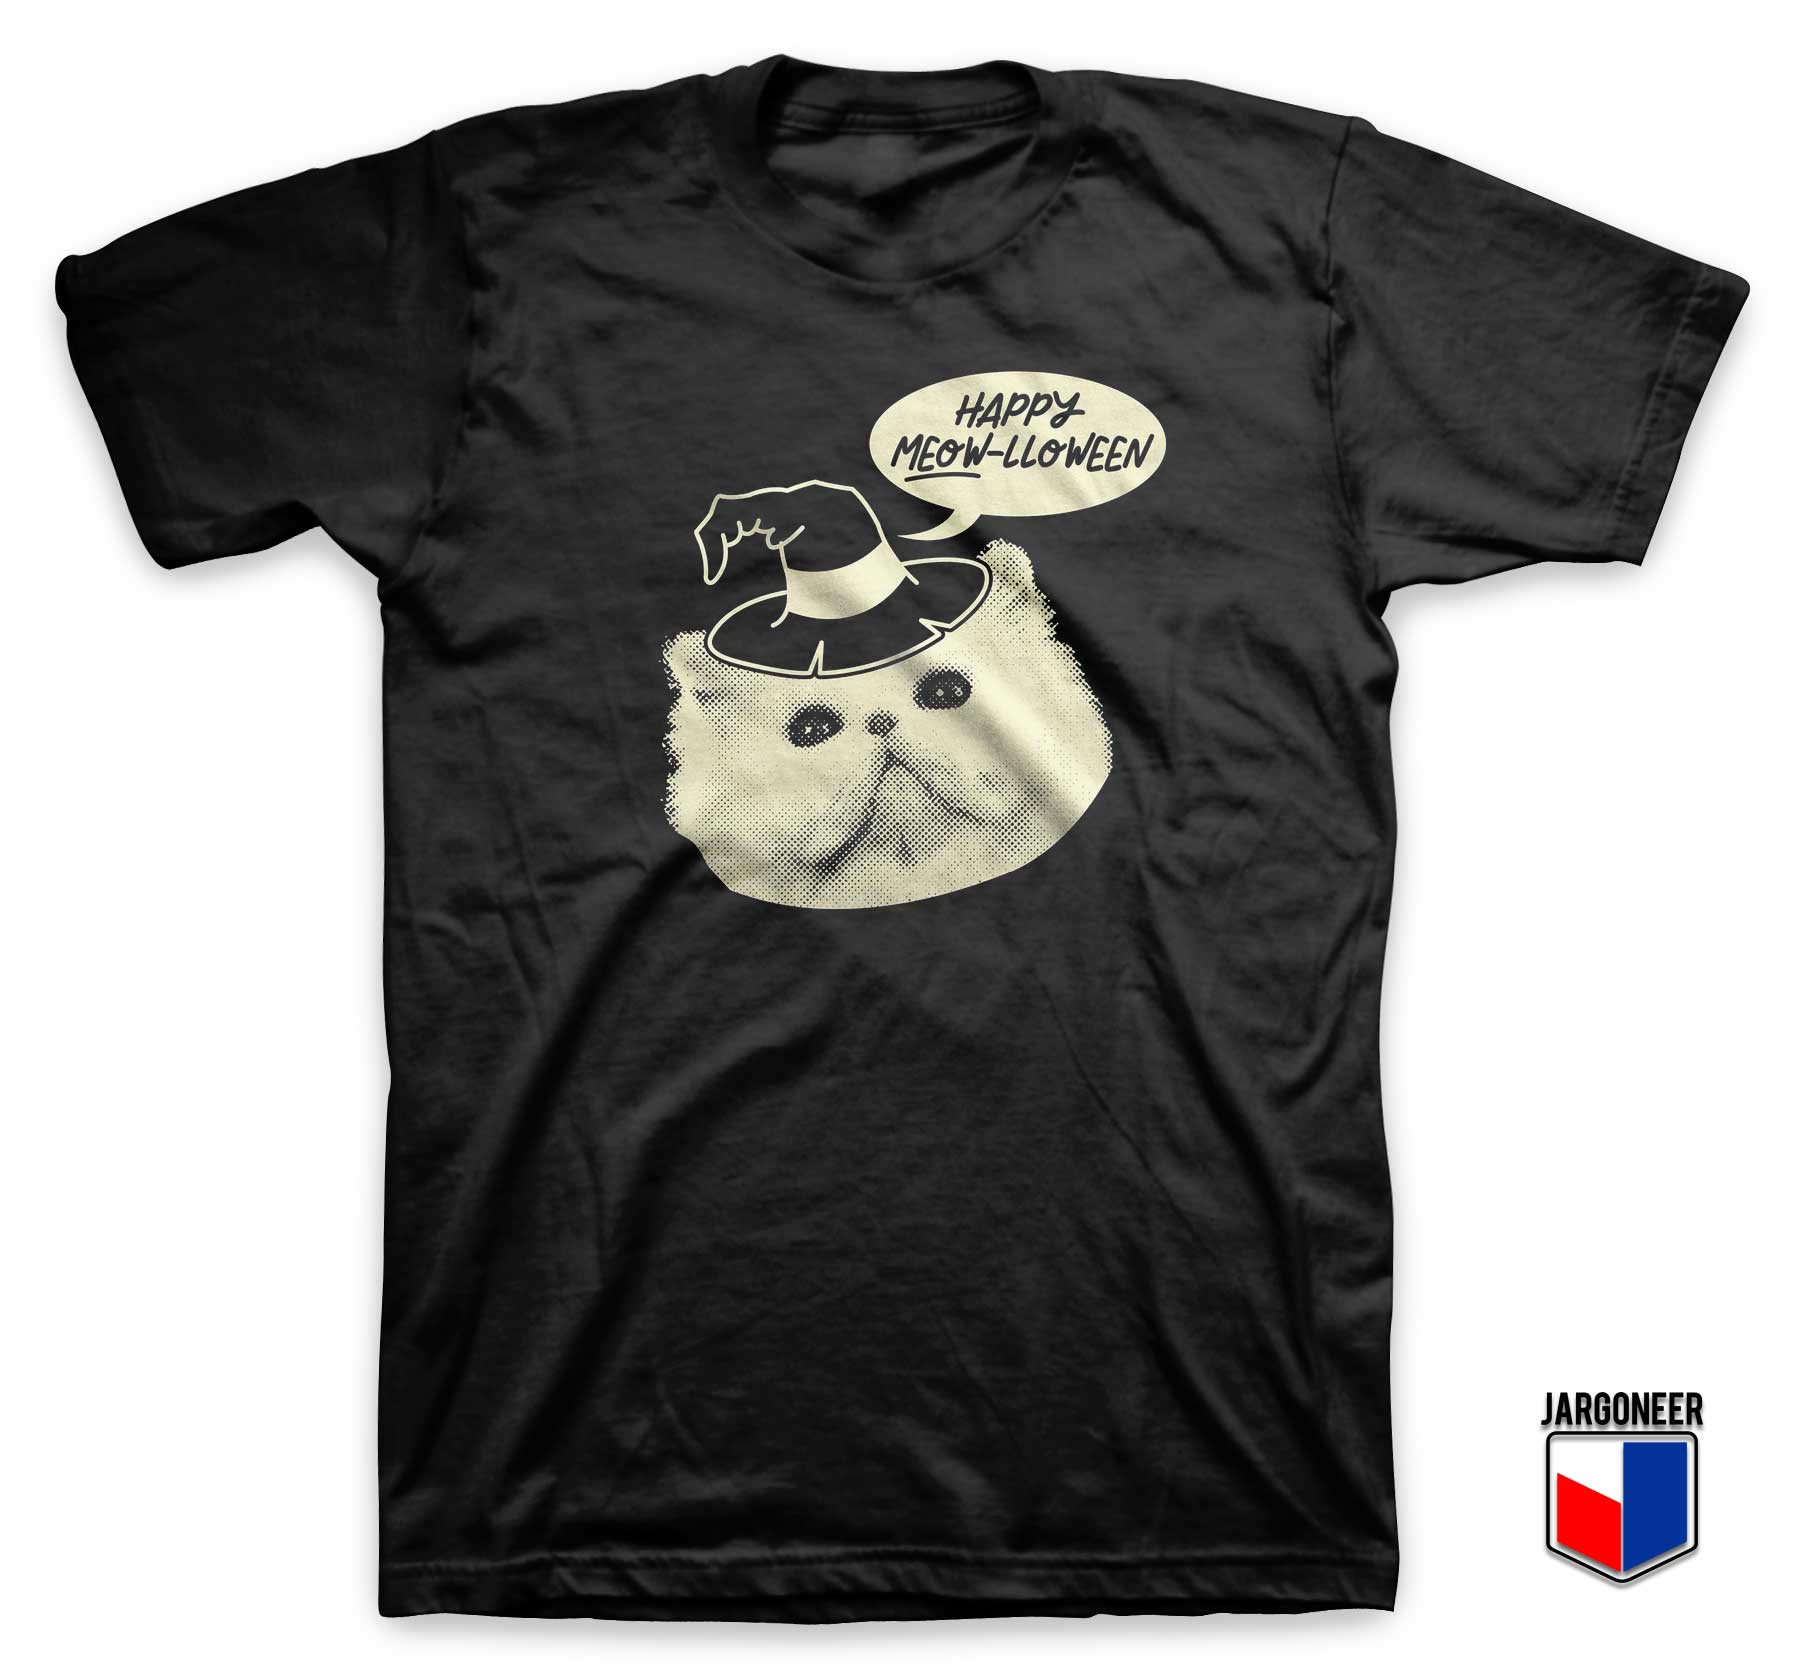 Happy Meowlloween Parody T Shirt - Shop Unique Graphic Cool Shirt Designs